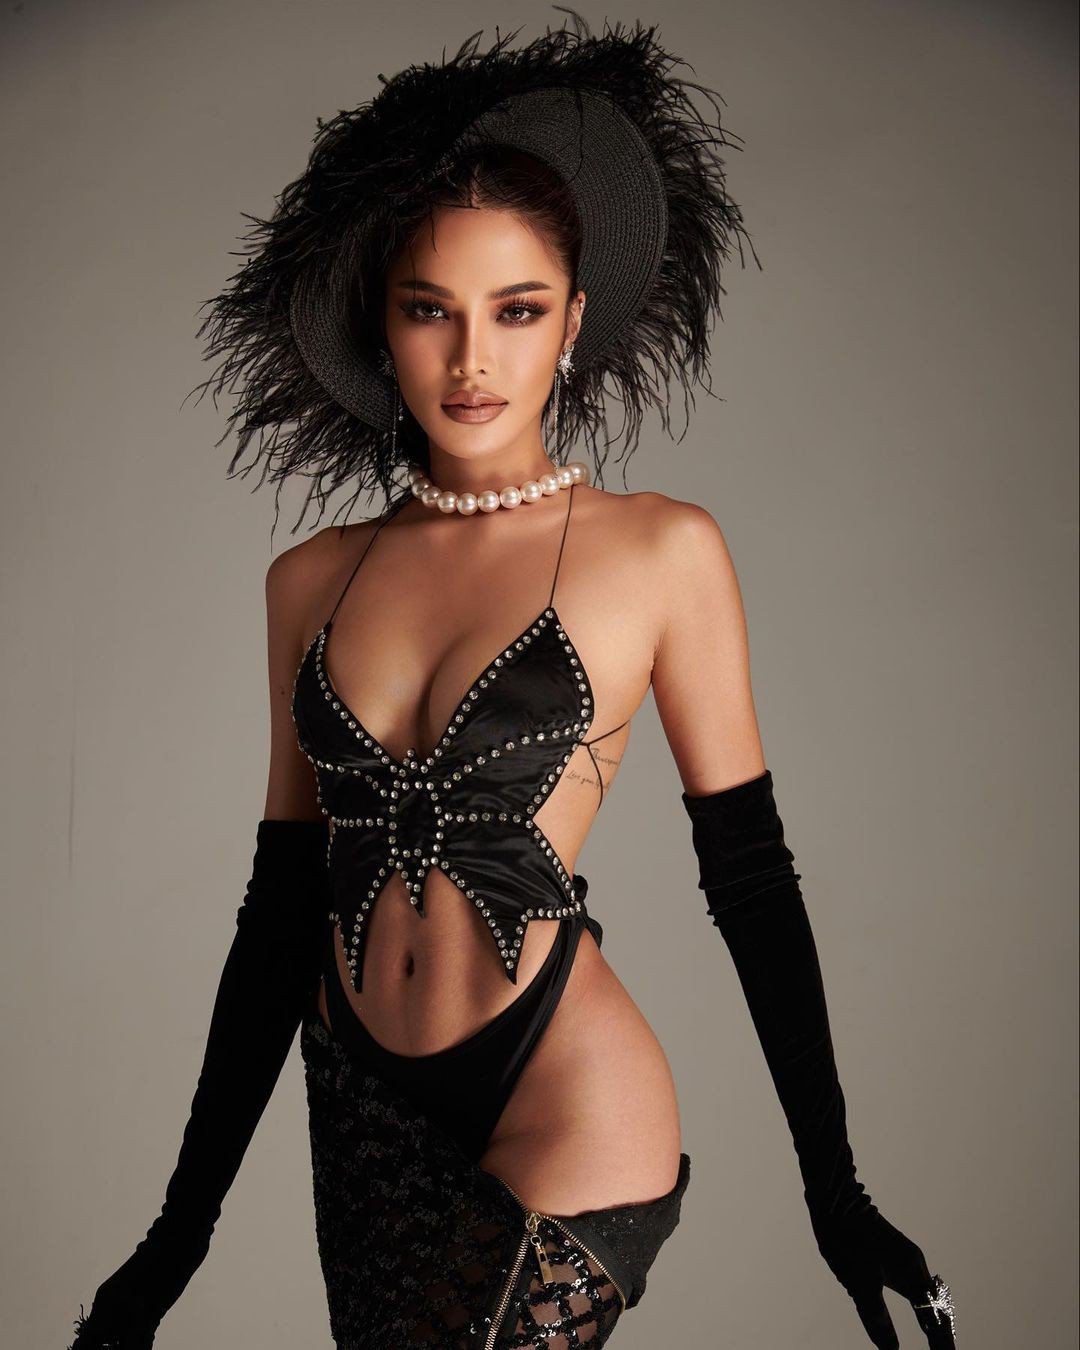 Hoa hậu Hòa bình Thái Lan bị chê mặc phản cảm - 4